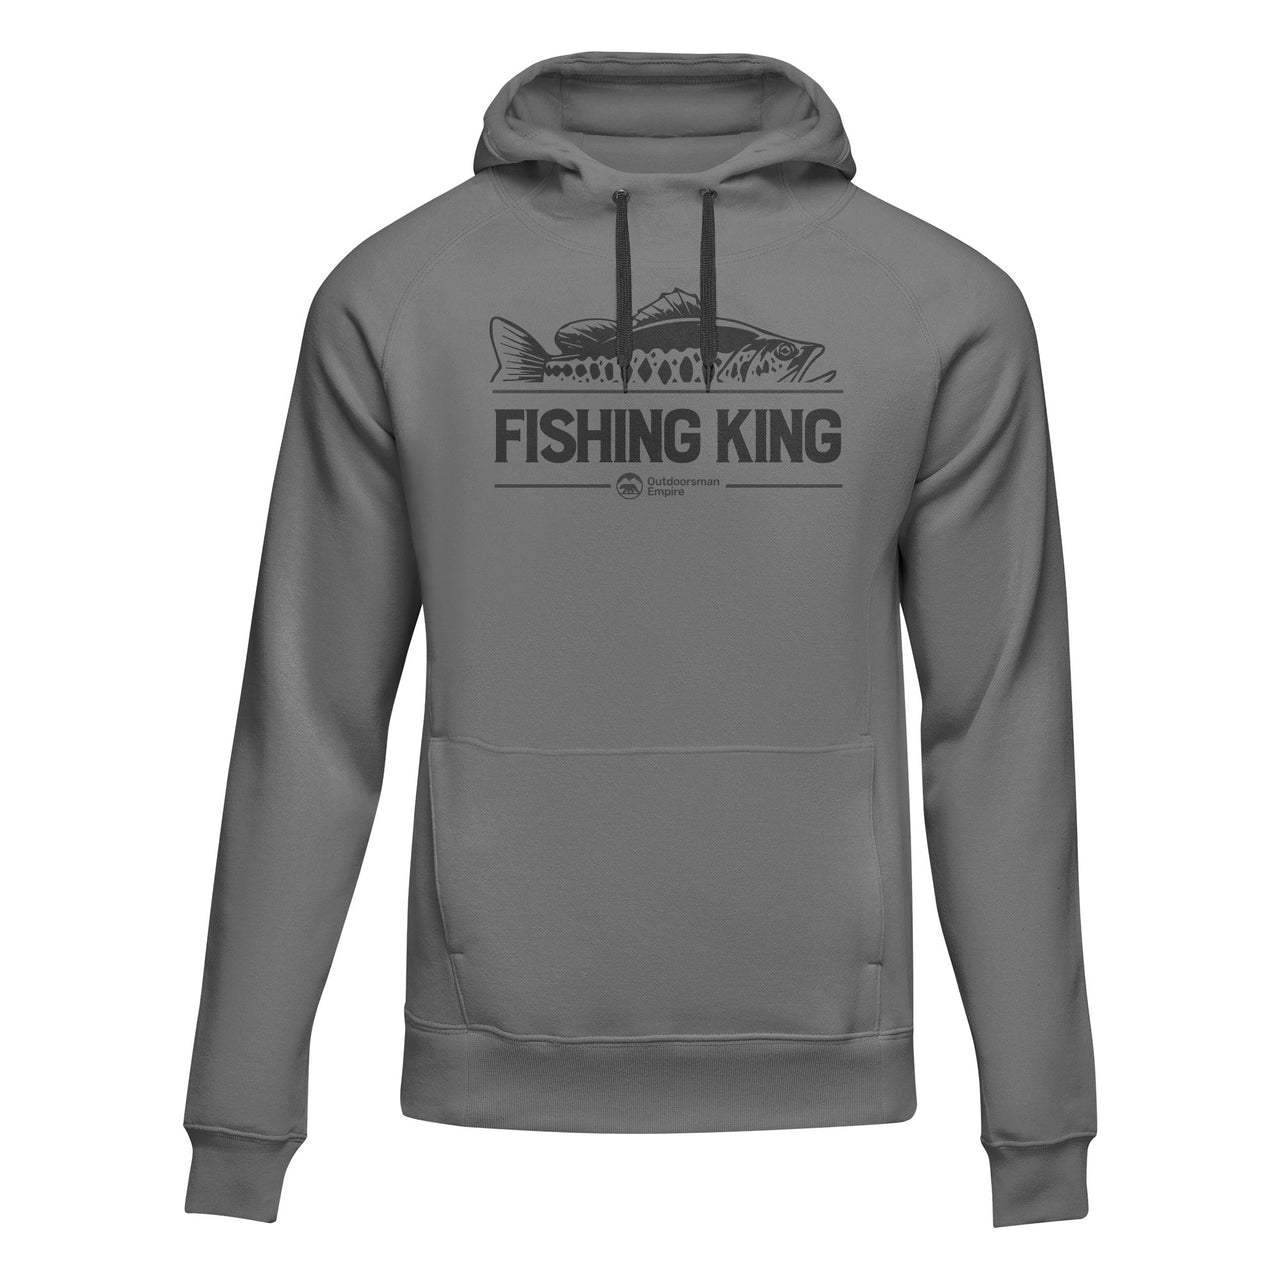 Fishing King' Adult Unisex Hoodie